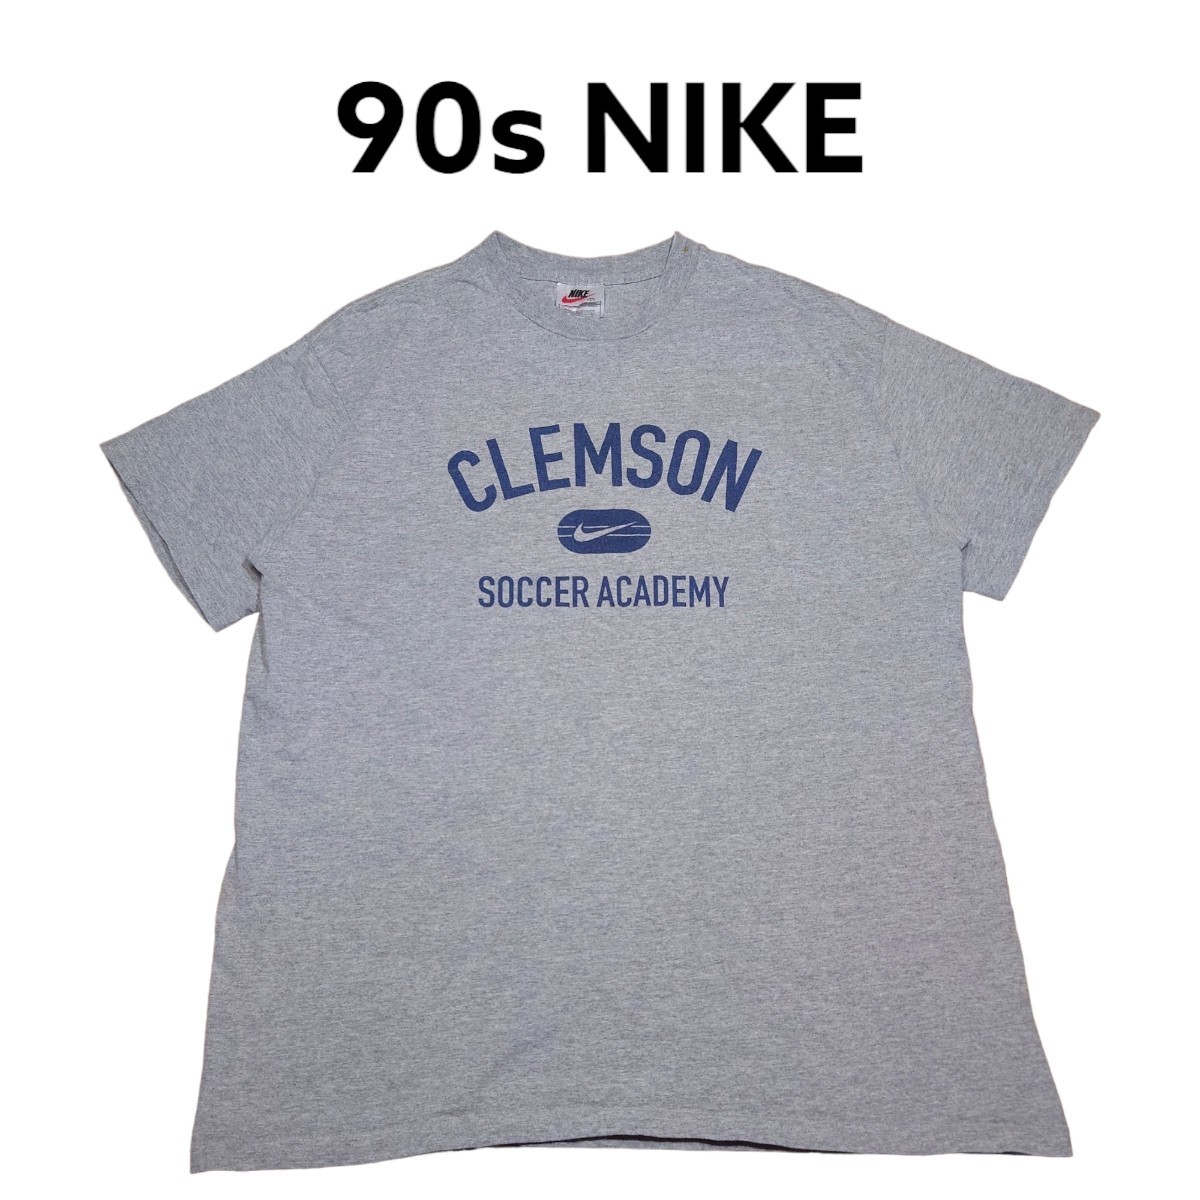 輝く高品質な 90s NIKE ビッグプリント Tシャツ 古着 ナイキ 白タグ